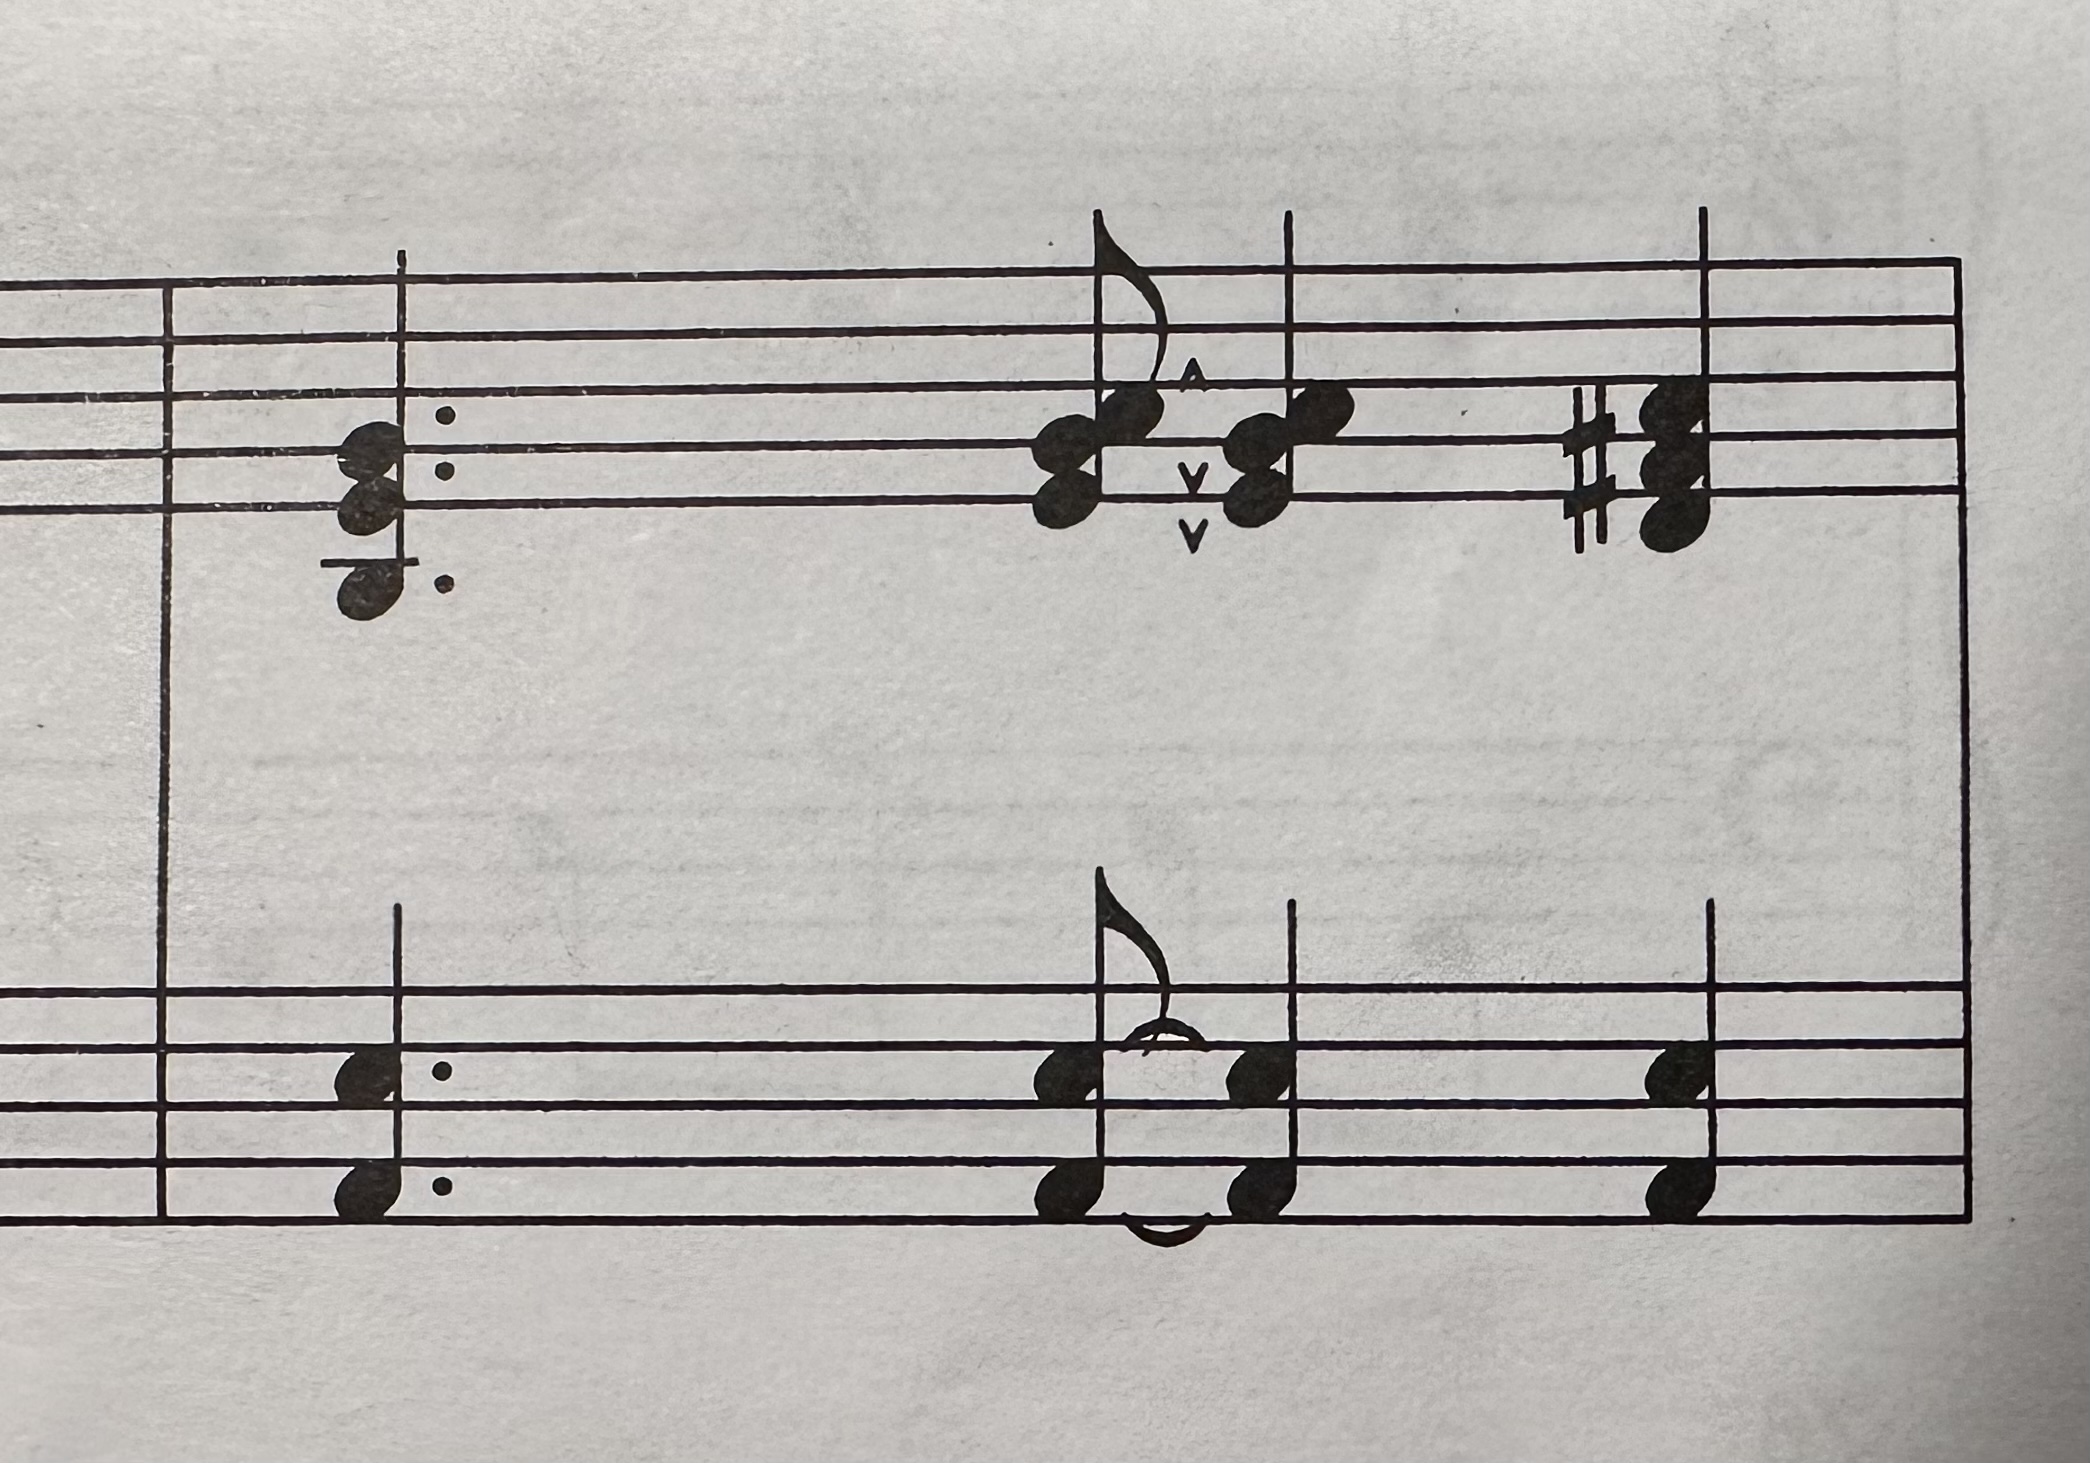 Score Notation | MuseScore